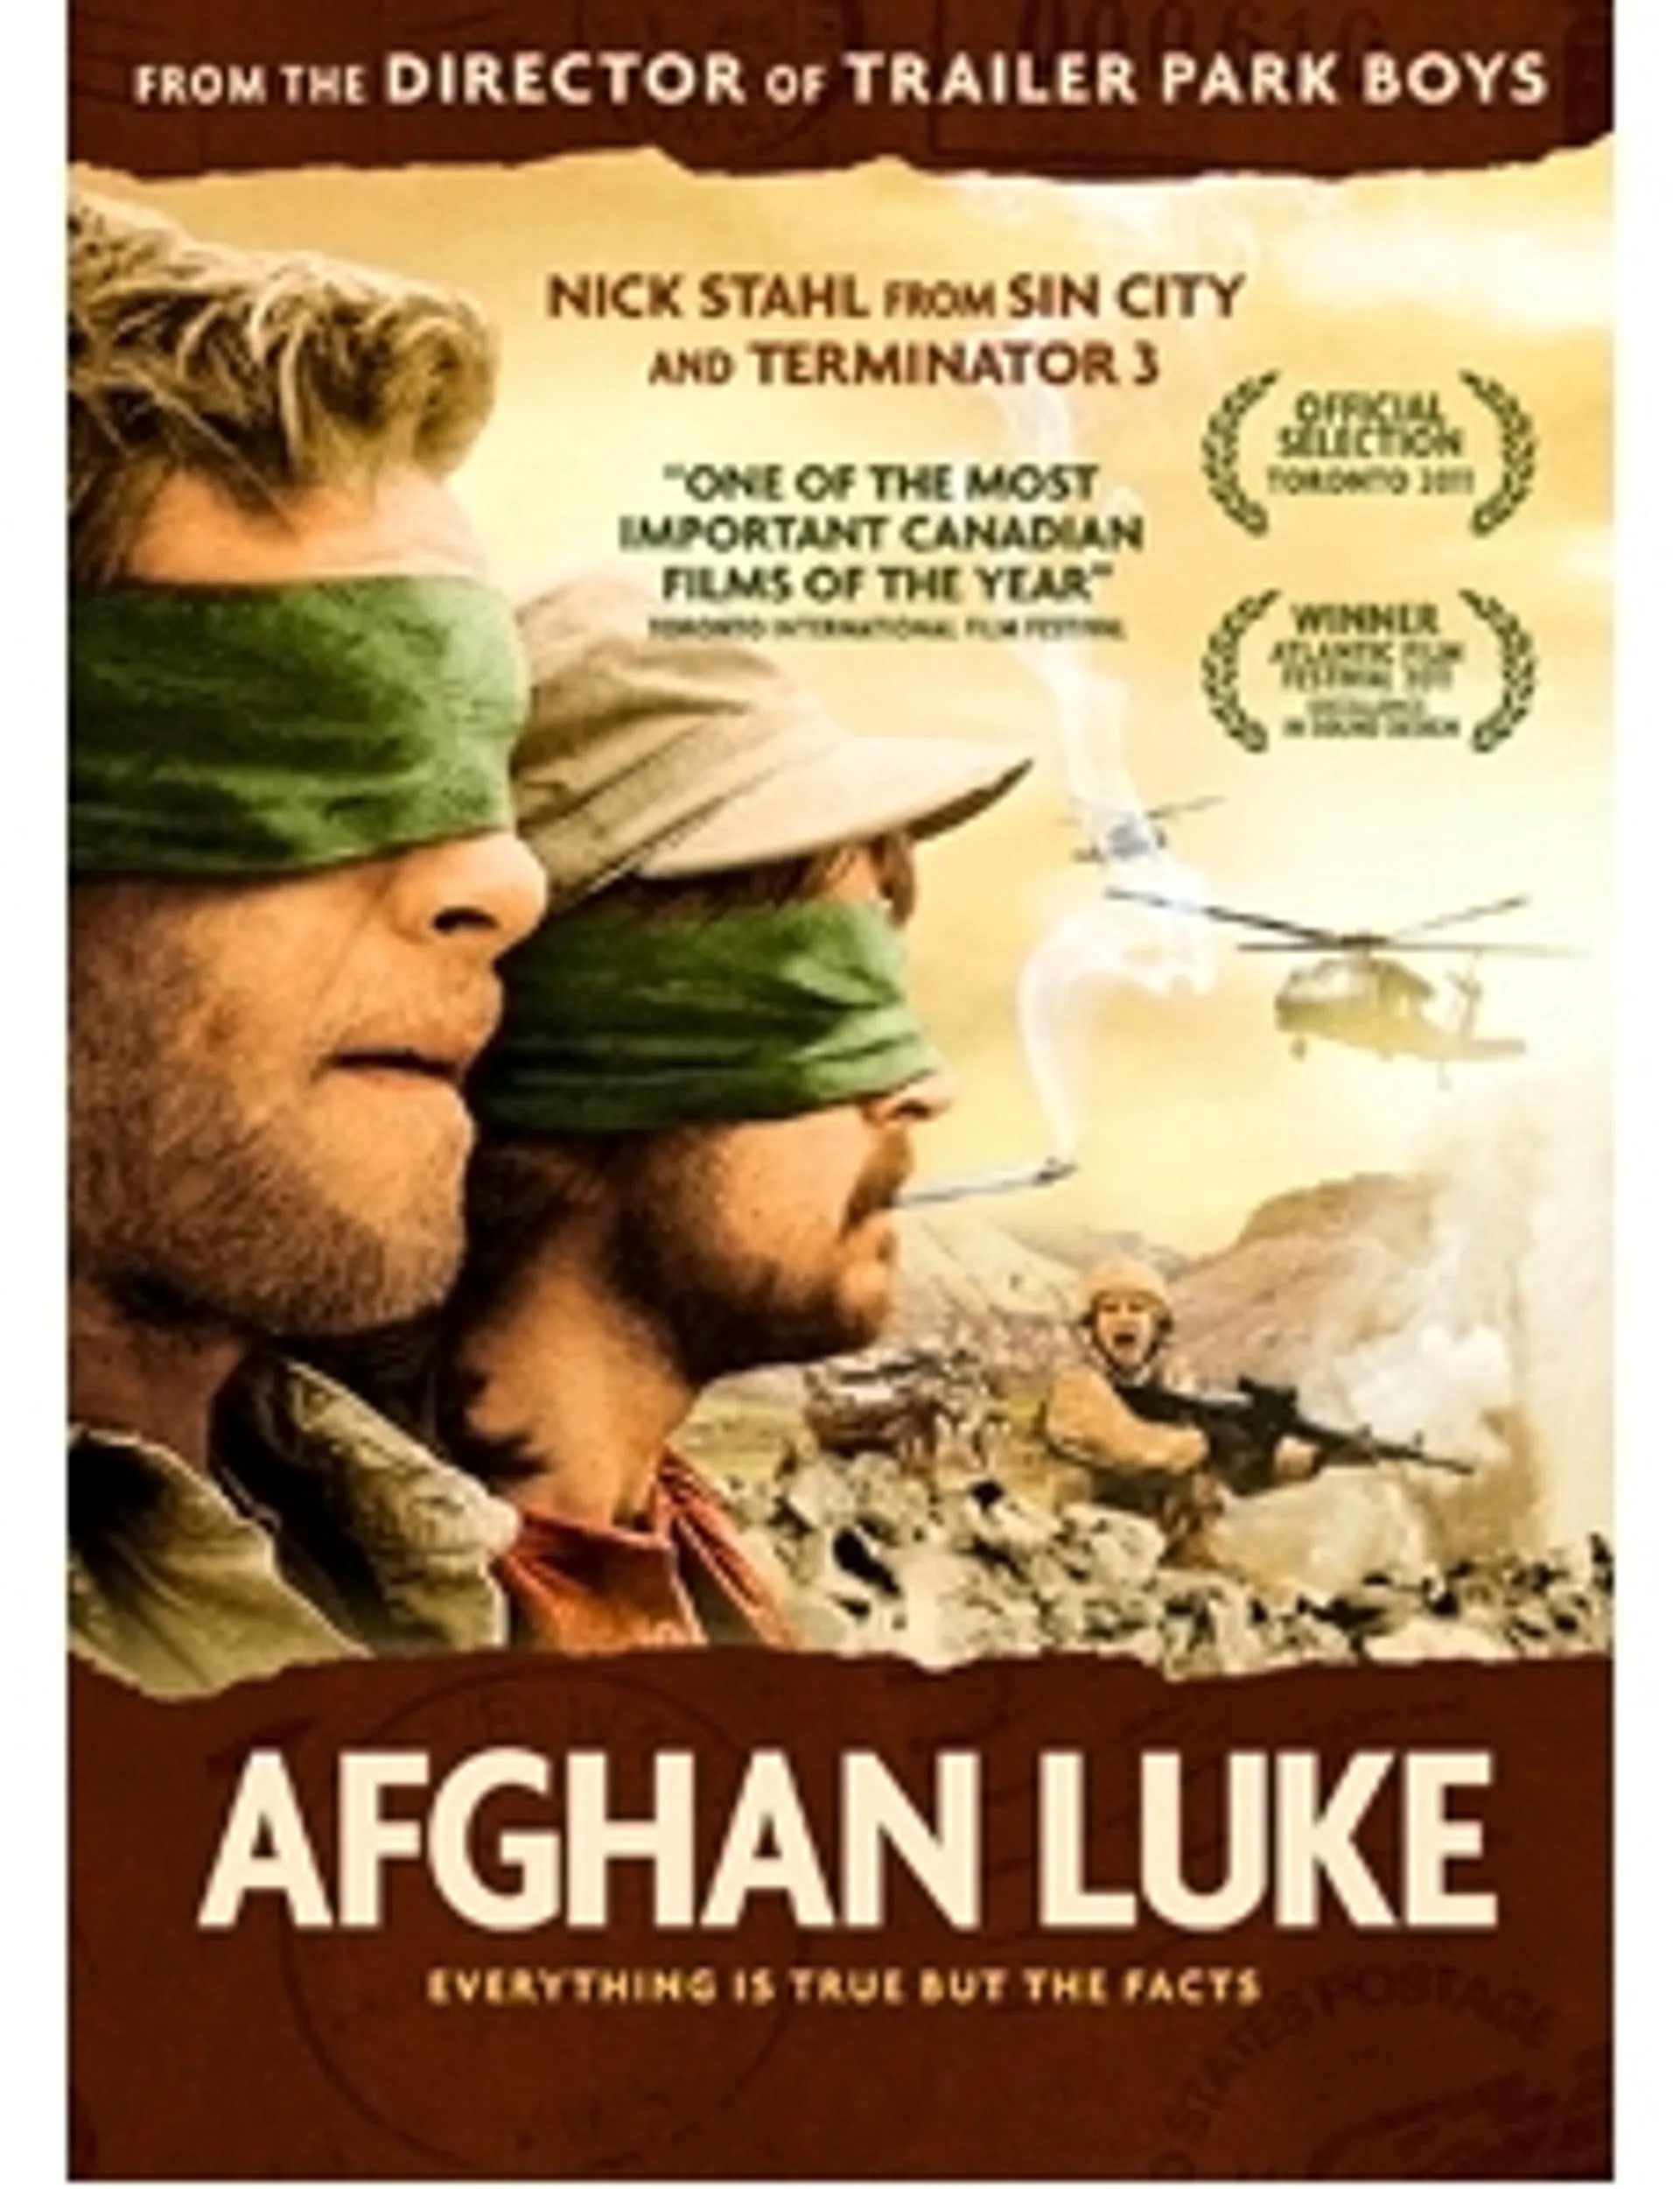 Afghan Luke DVD